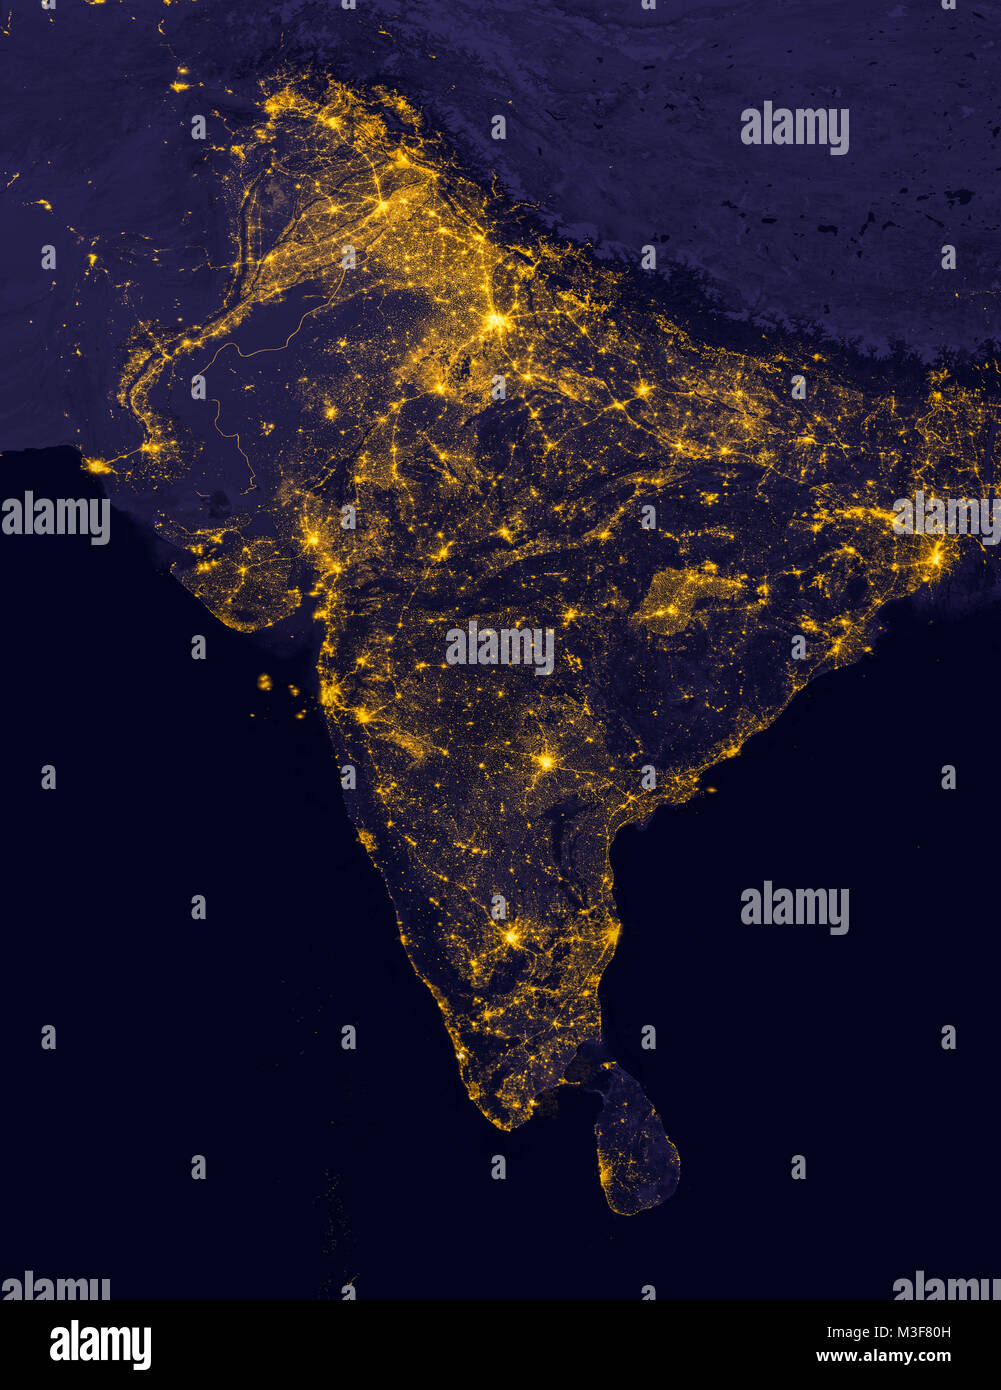 Indien leuchtet bei Nacht, weil es so aussieht, als aus dem Weltraum. Elemente dieses Bild sind von der NASA eingerichtet. Stockfoto